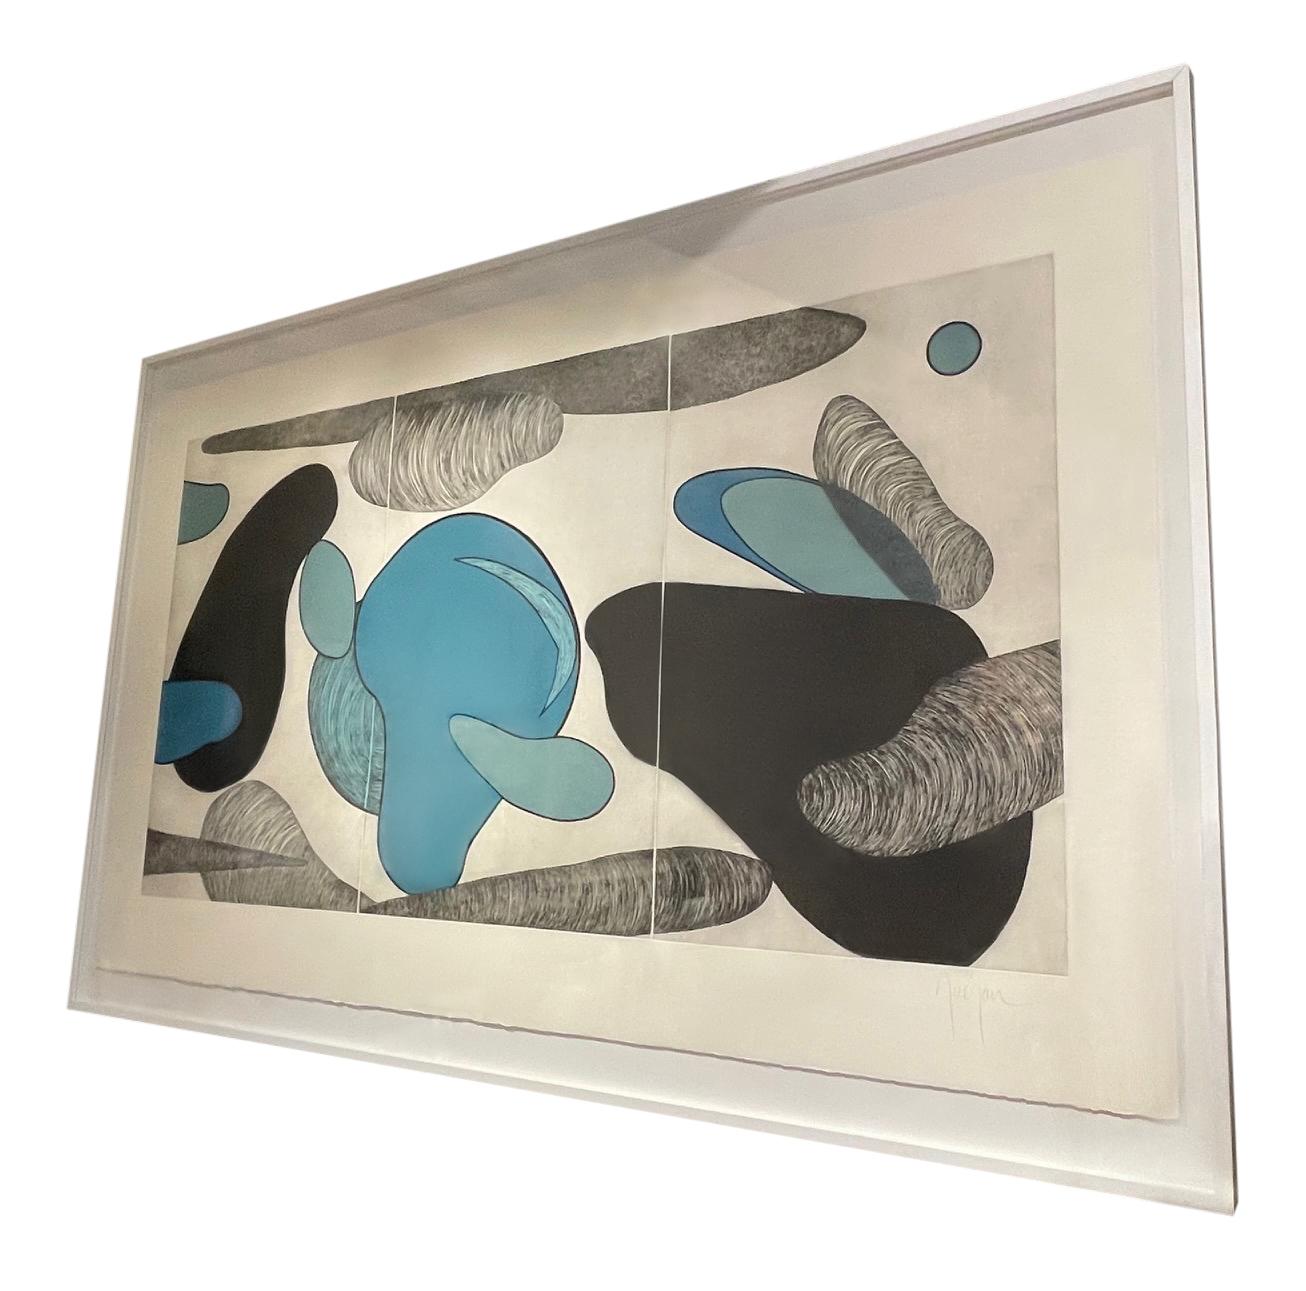 Zeitgenössische französische Künstlerin Marielle Guegan EXTRA EXTRA großes Triptychon.
Kombination aus Malerei und Gravur.
Weißer Rahmen mit Acryloberfläche.